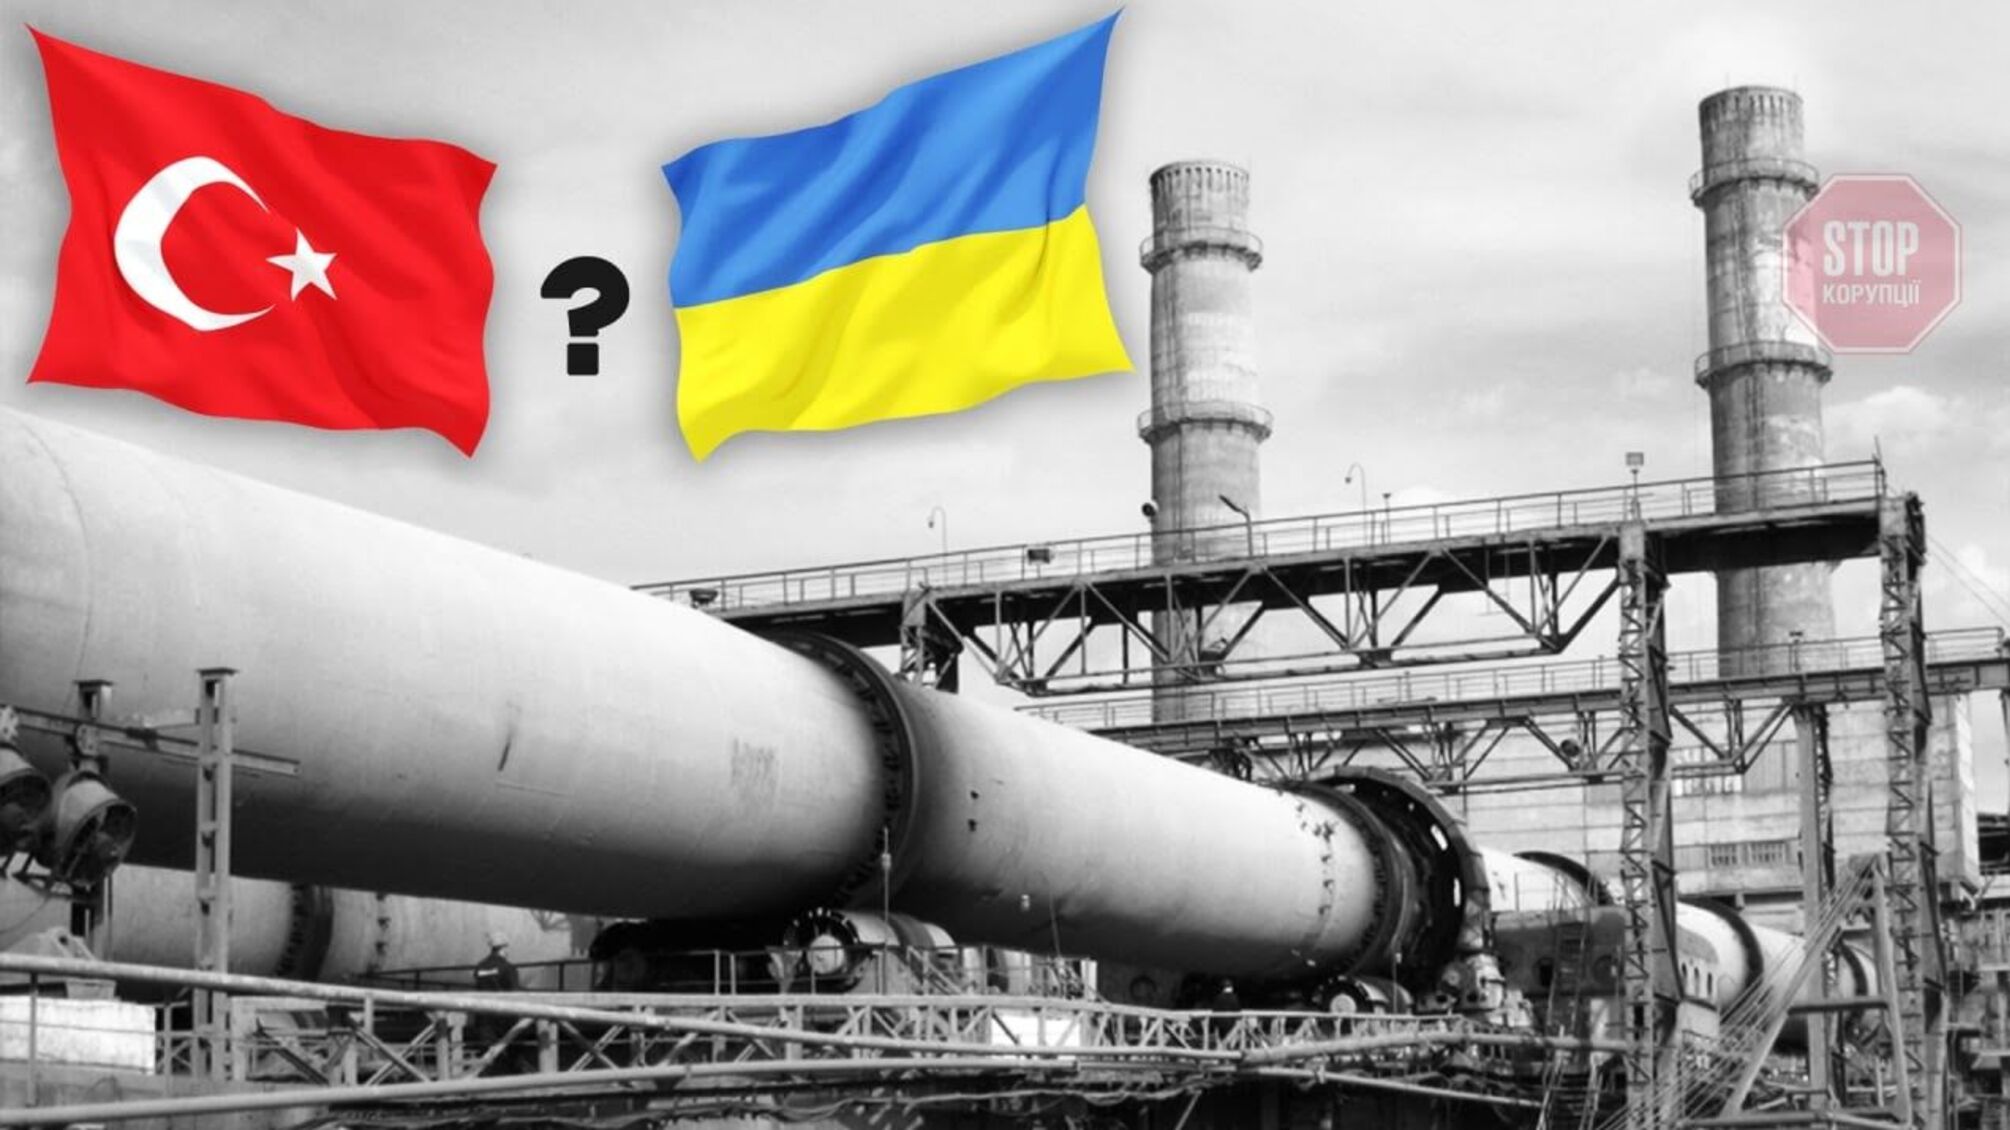 Убьет ли турецкая экспансия украинскую цементную промышленность? В столице обсудили риски создания ЗСТ